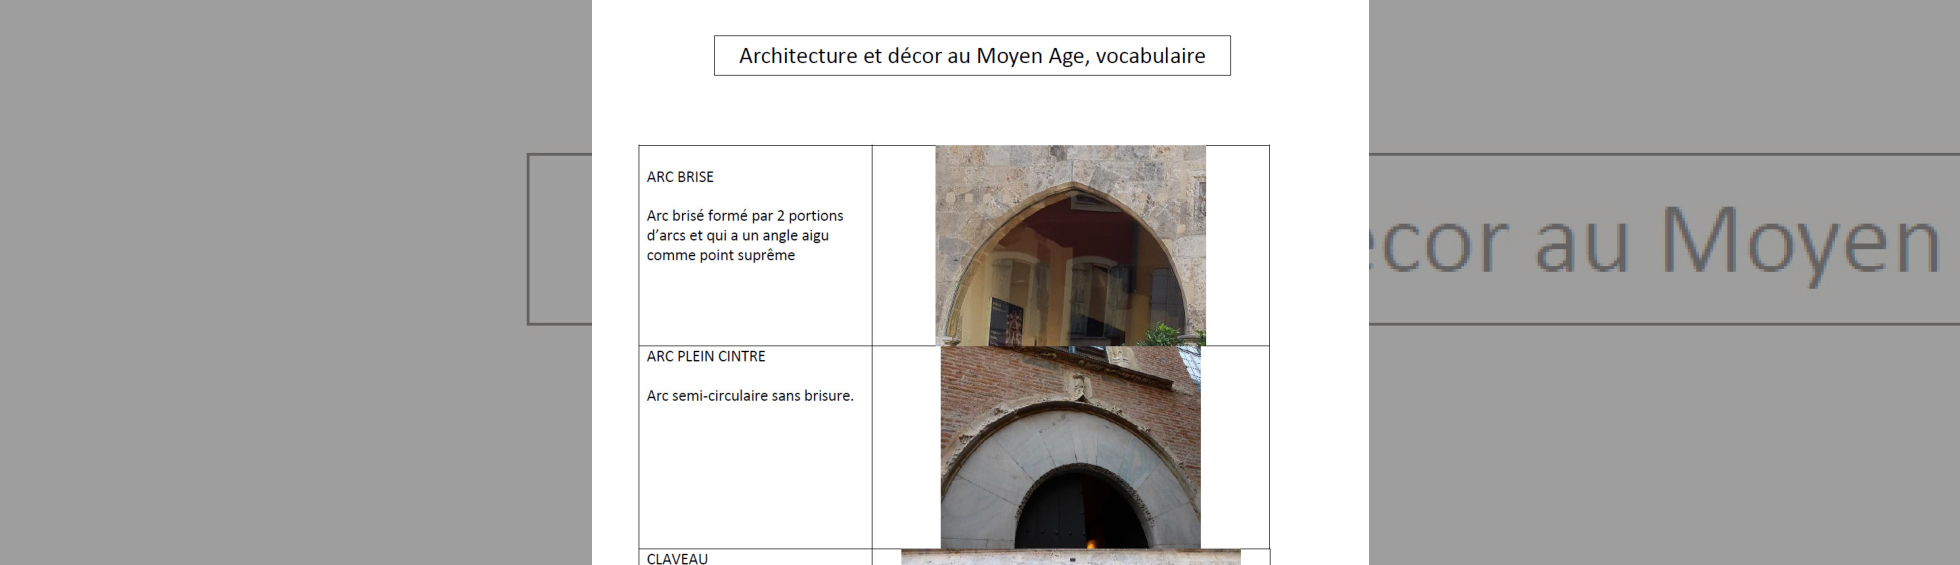 Architecture et décor du moyen âge 